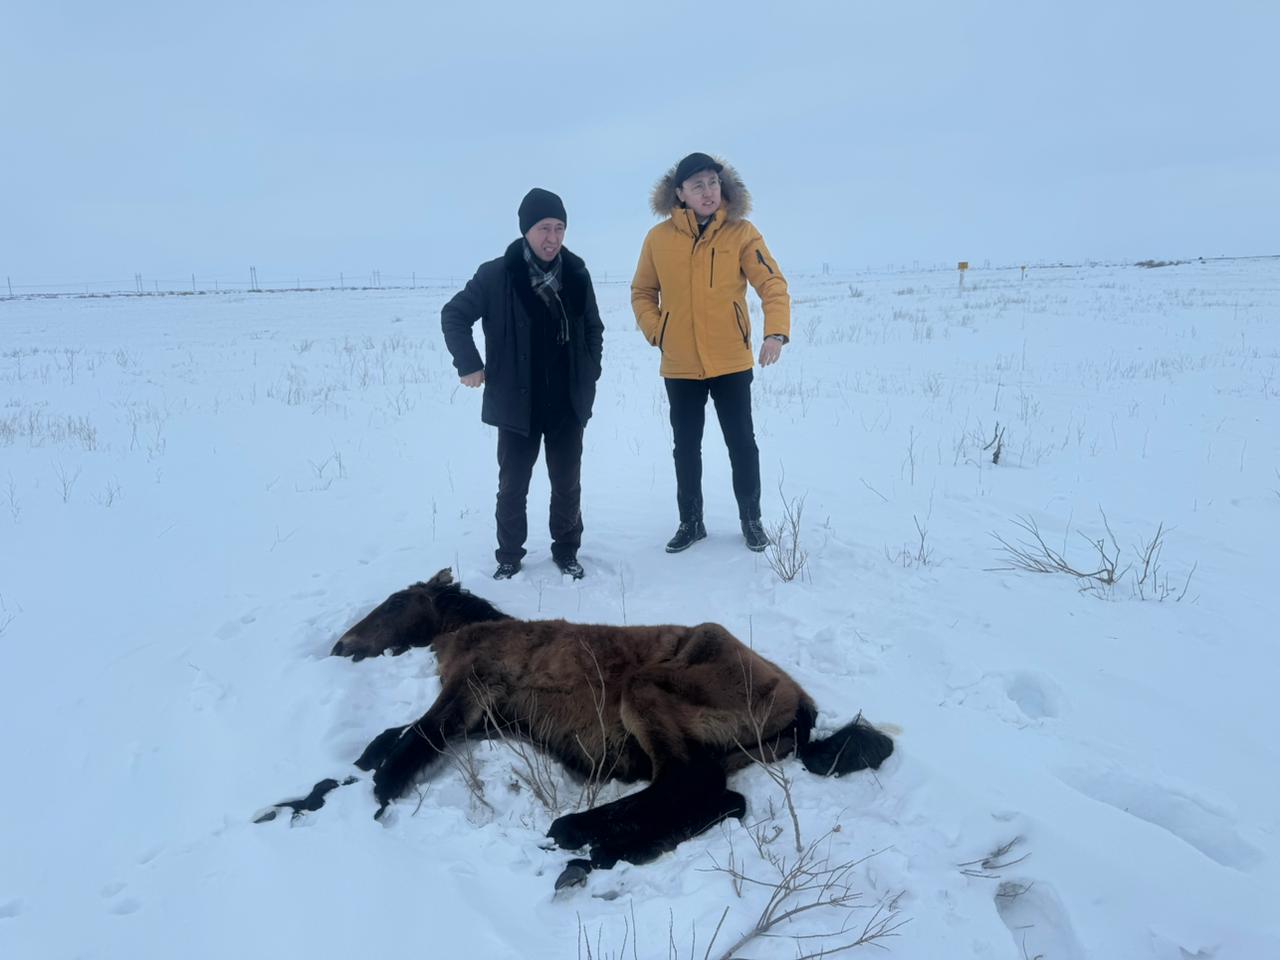 Падеж лошадей в Улытауской области: все погибшие животные не были идентифицированы